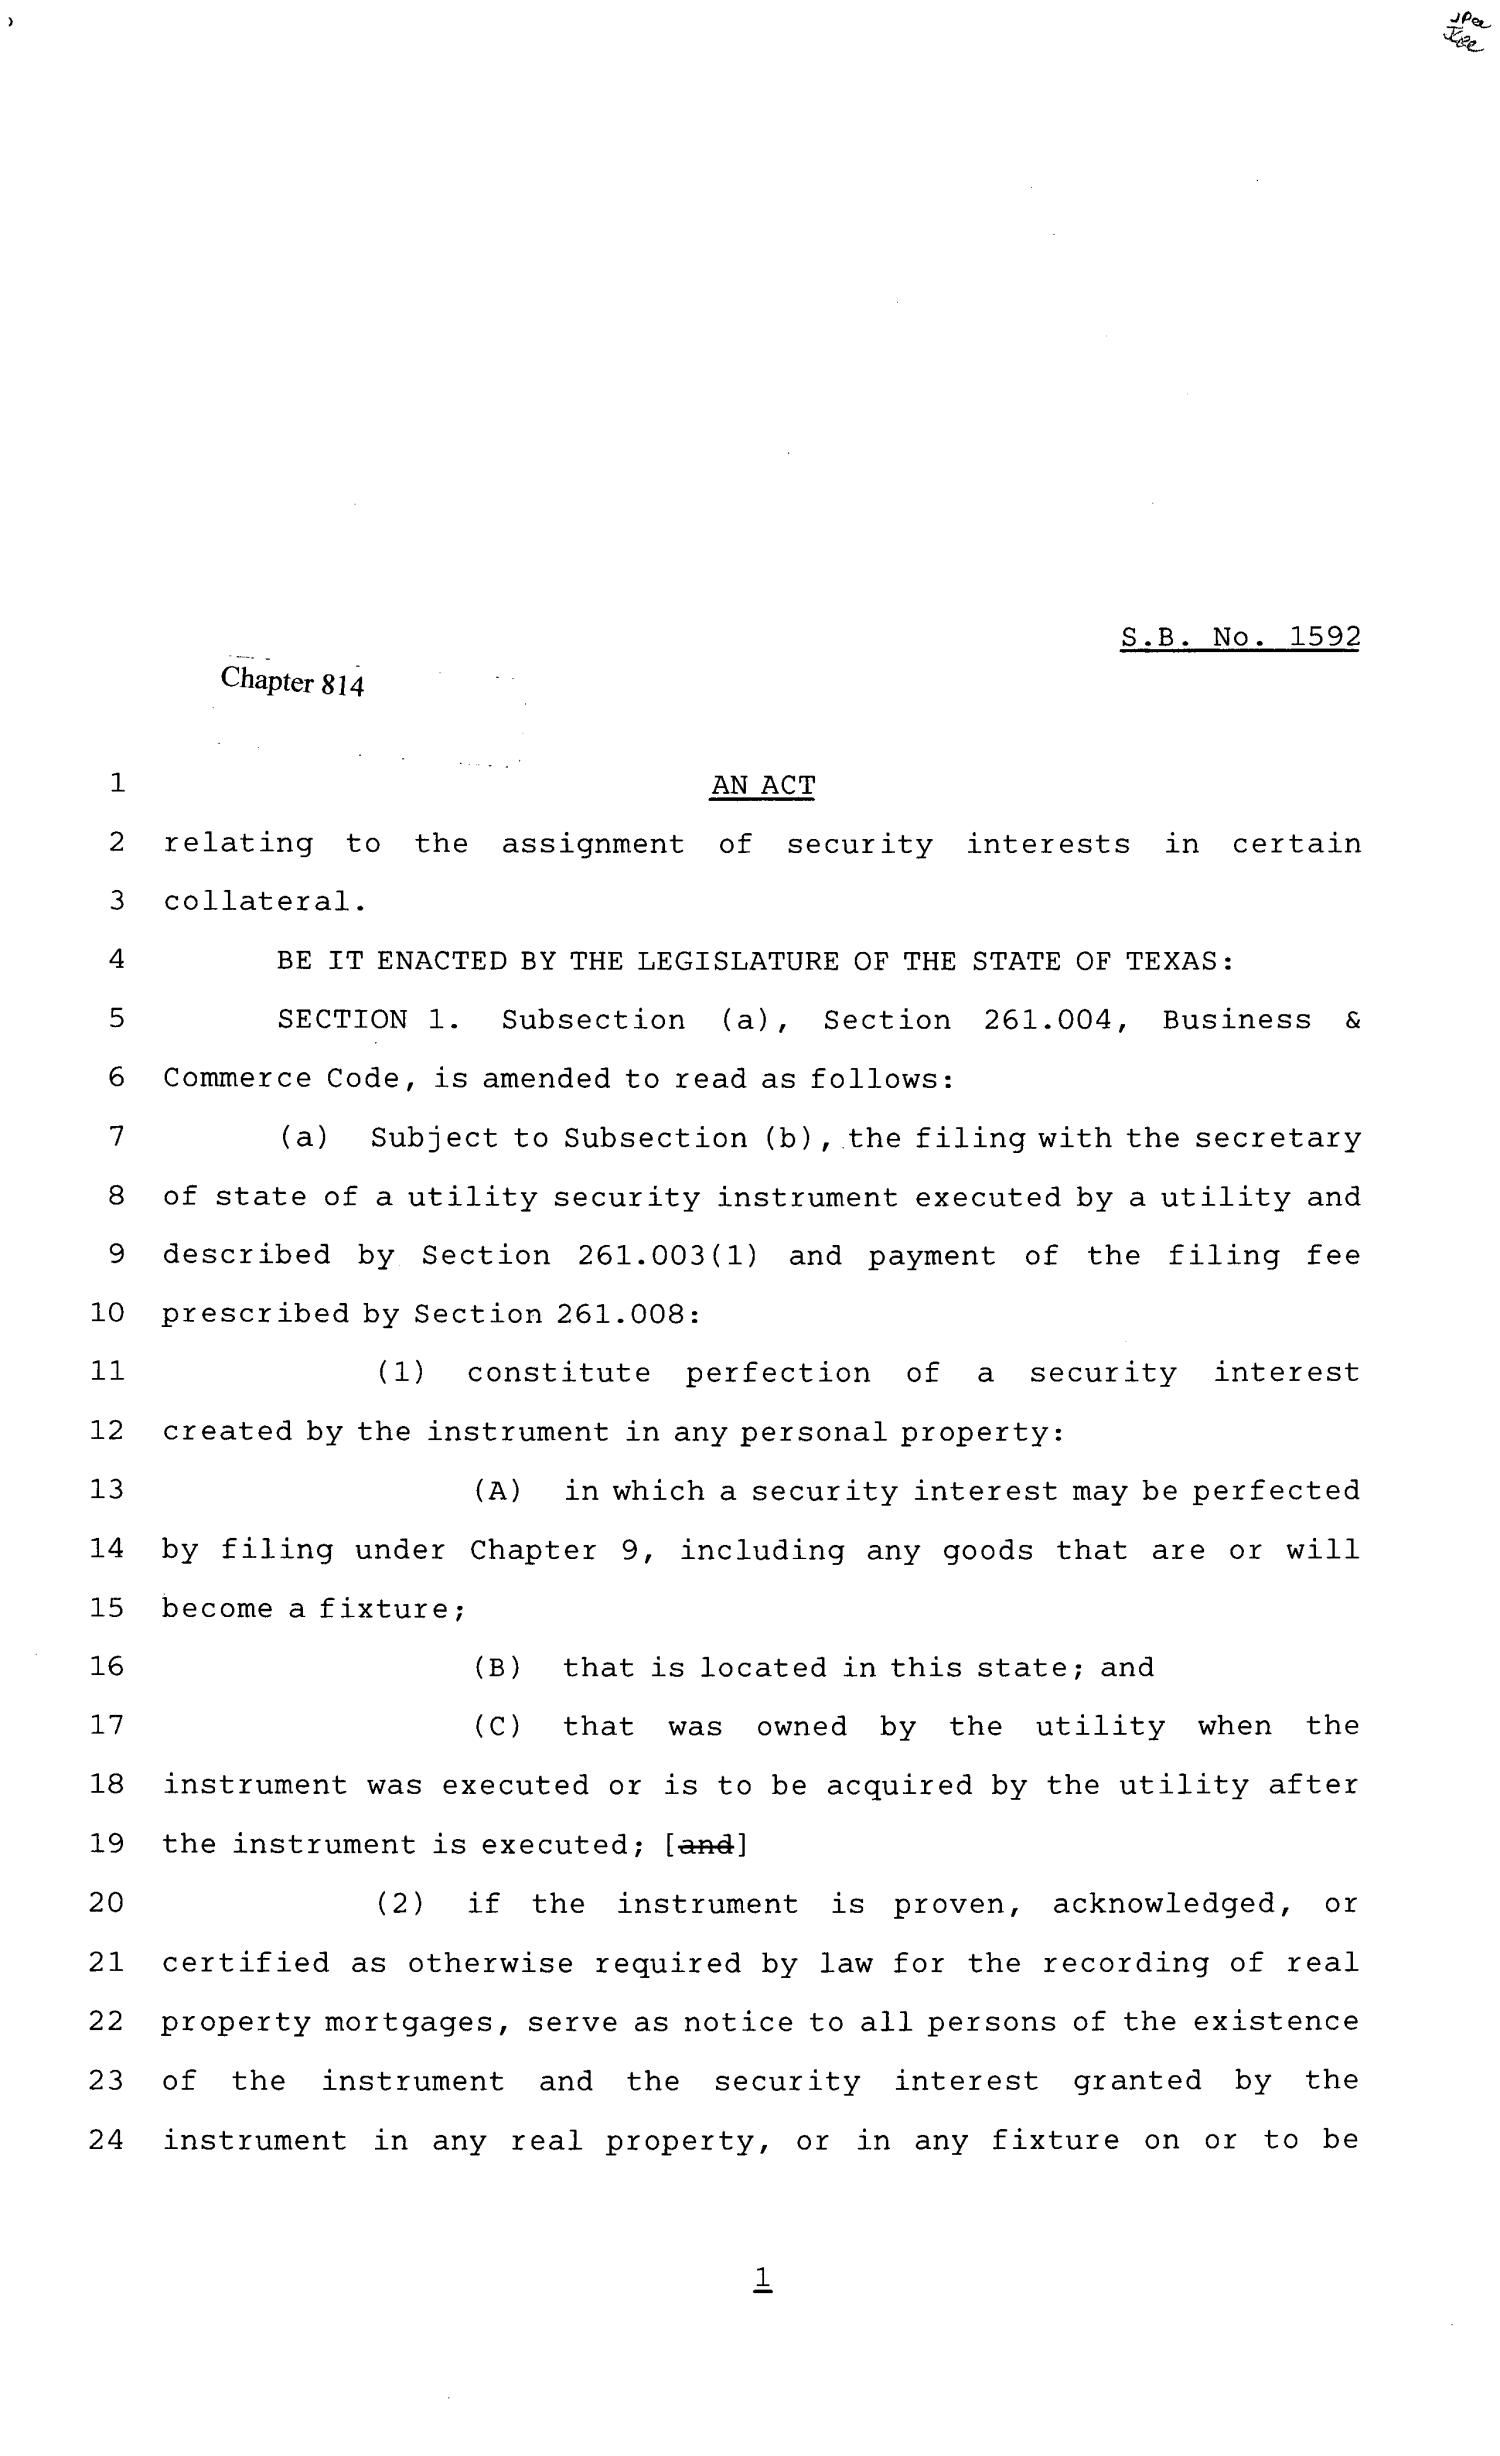 81st Texas Legislature, Senate Bill 1592, Chapter 814
                                                
                                                    [Sequence #]: 1 of 8
                                                